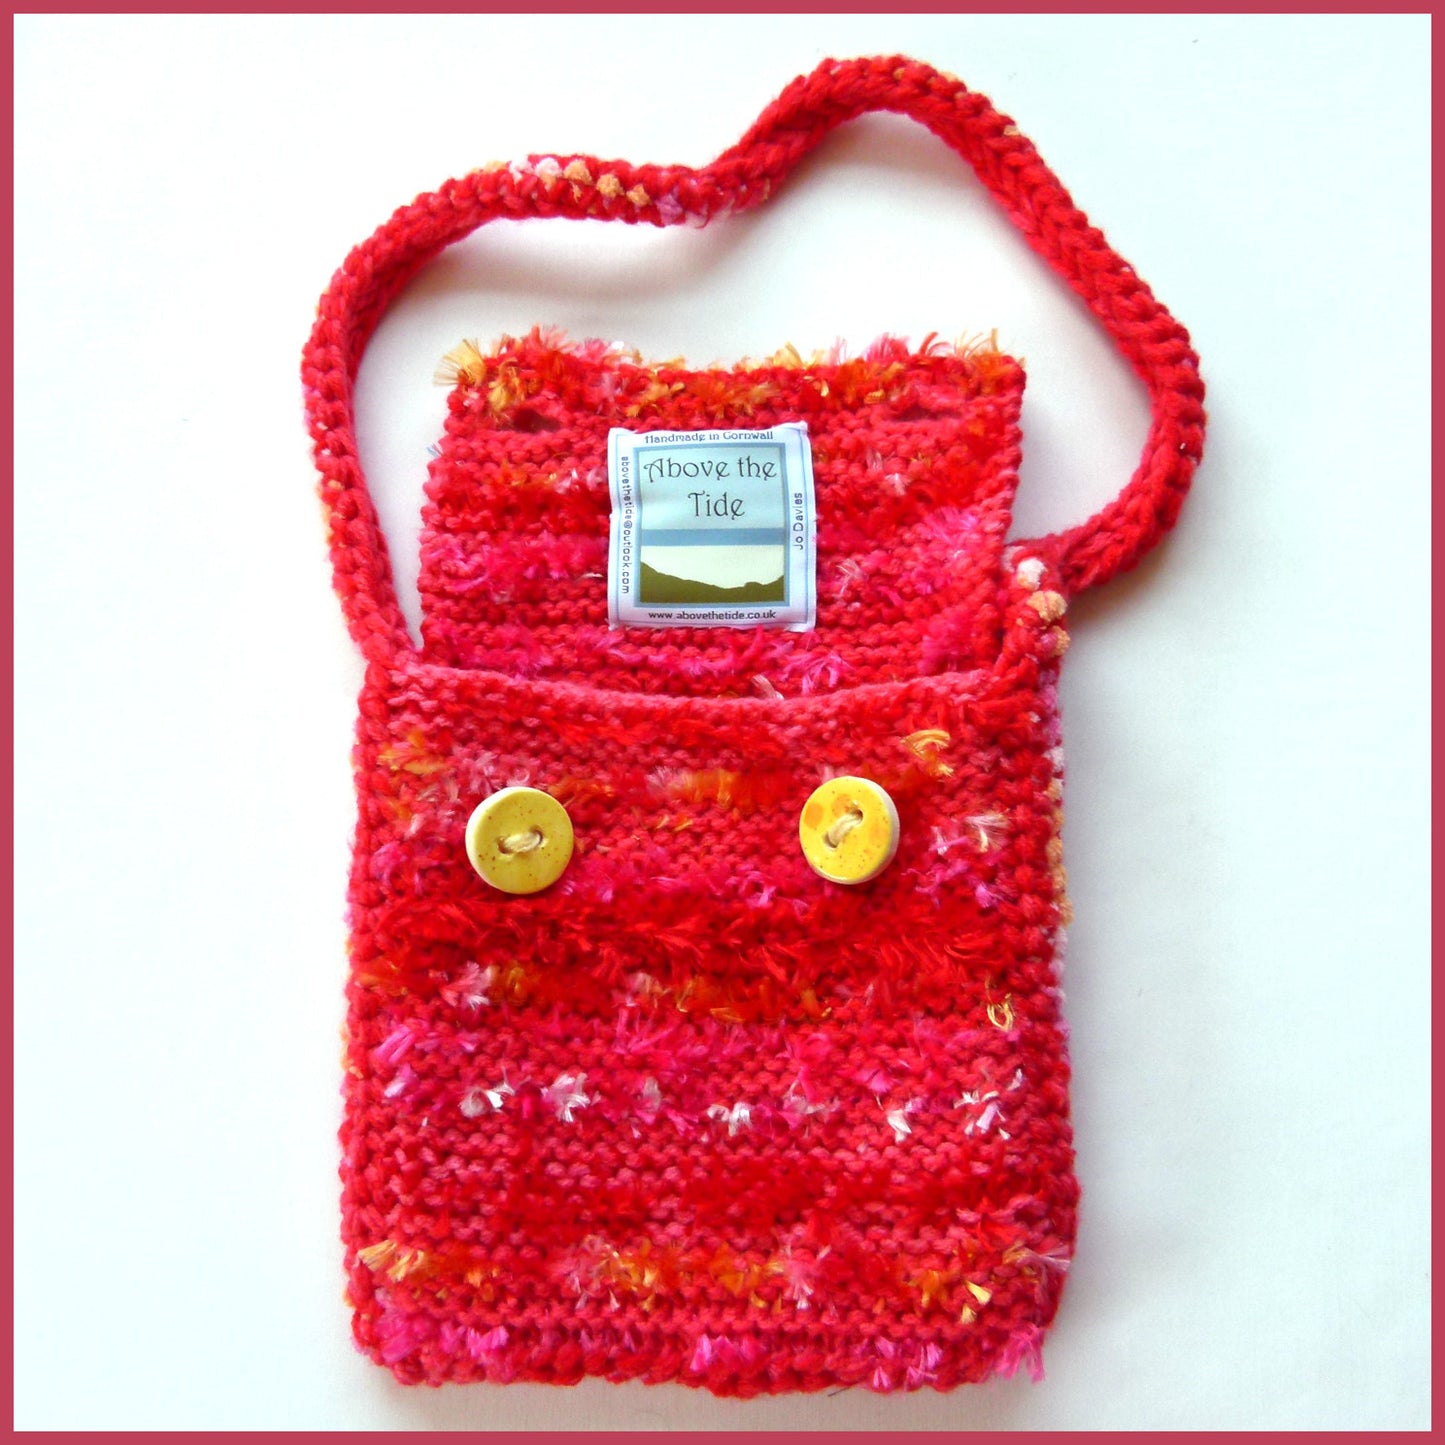 Handmade Flamingo Pink Textile Shoulder Bag